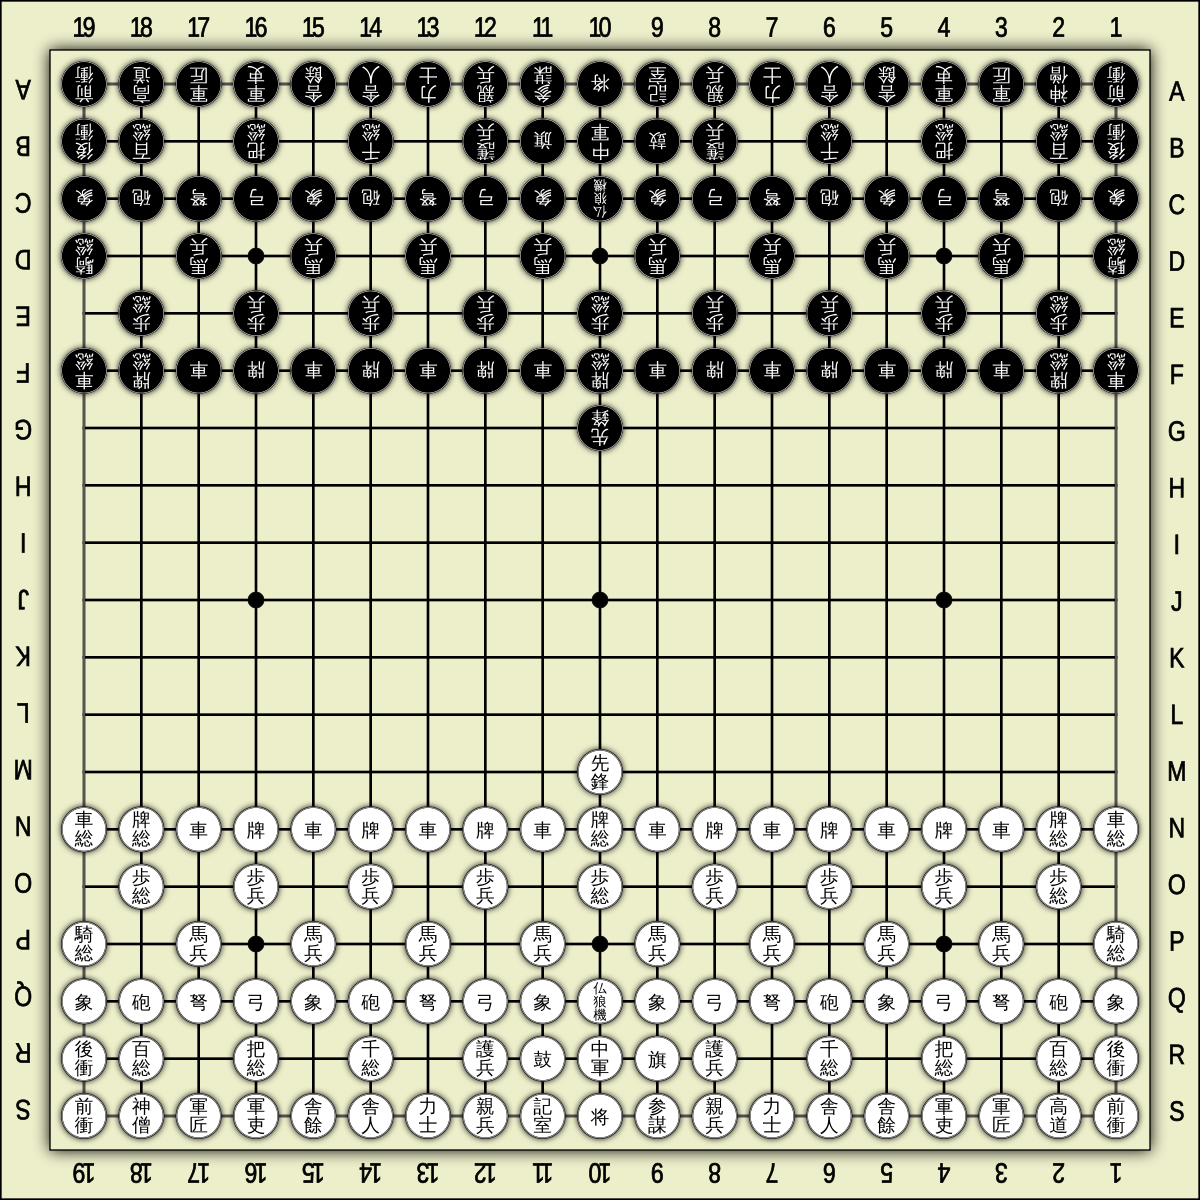 File:Koushi 10x10.svg - Wikipedia